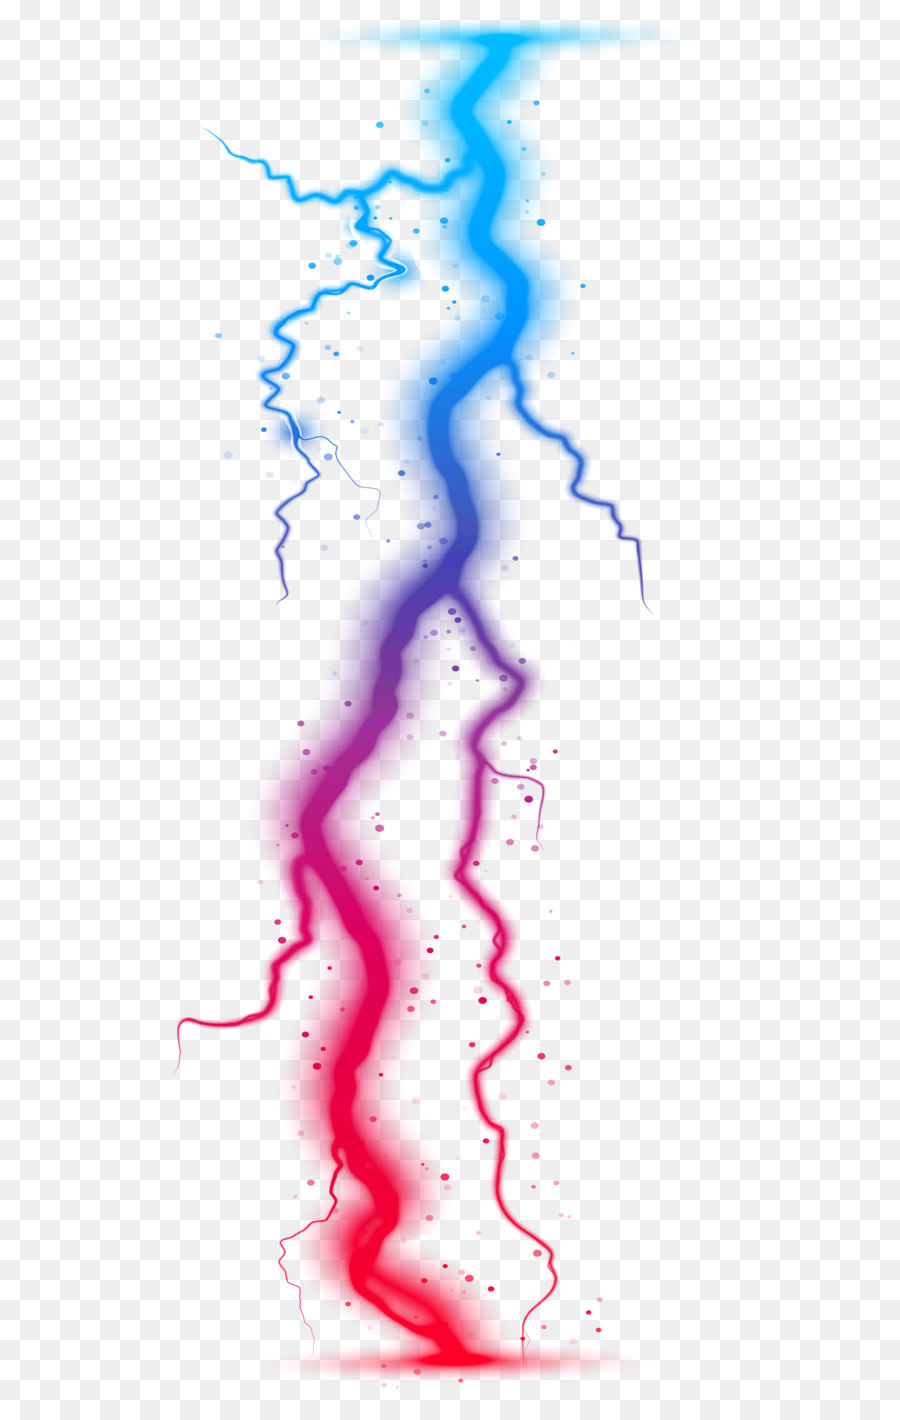 Lightning MFi Program - Colorful Lightning Transparent PNG Clip Art Image png download - 3714*8000 - Free Transparent Lightning png Download.